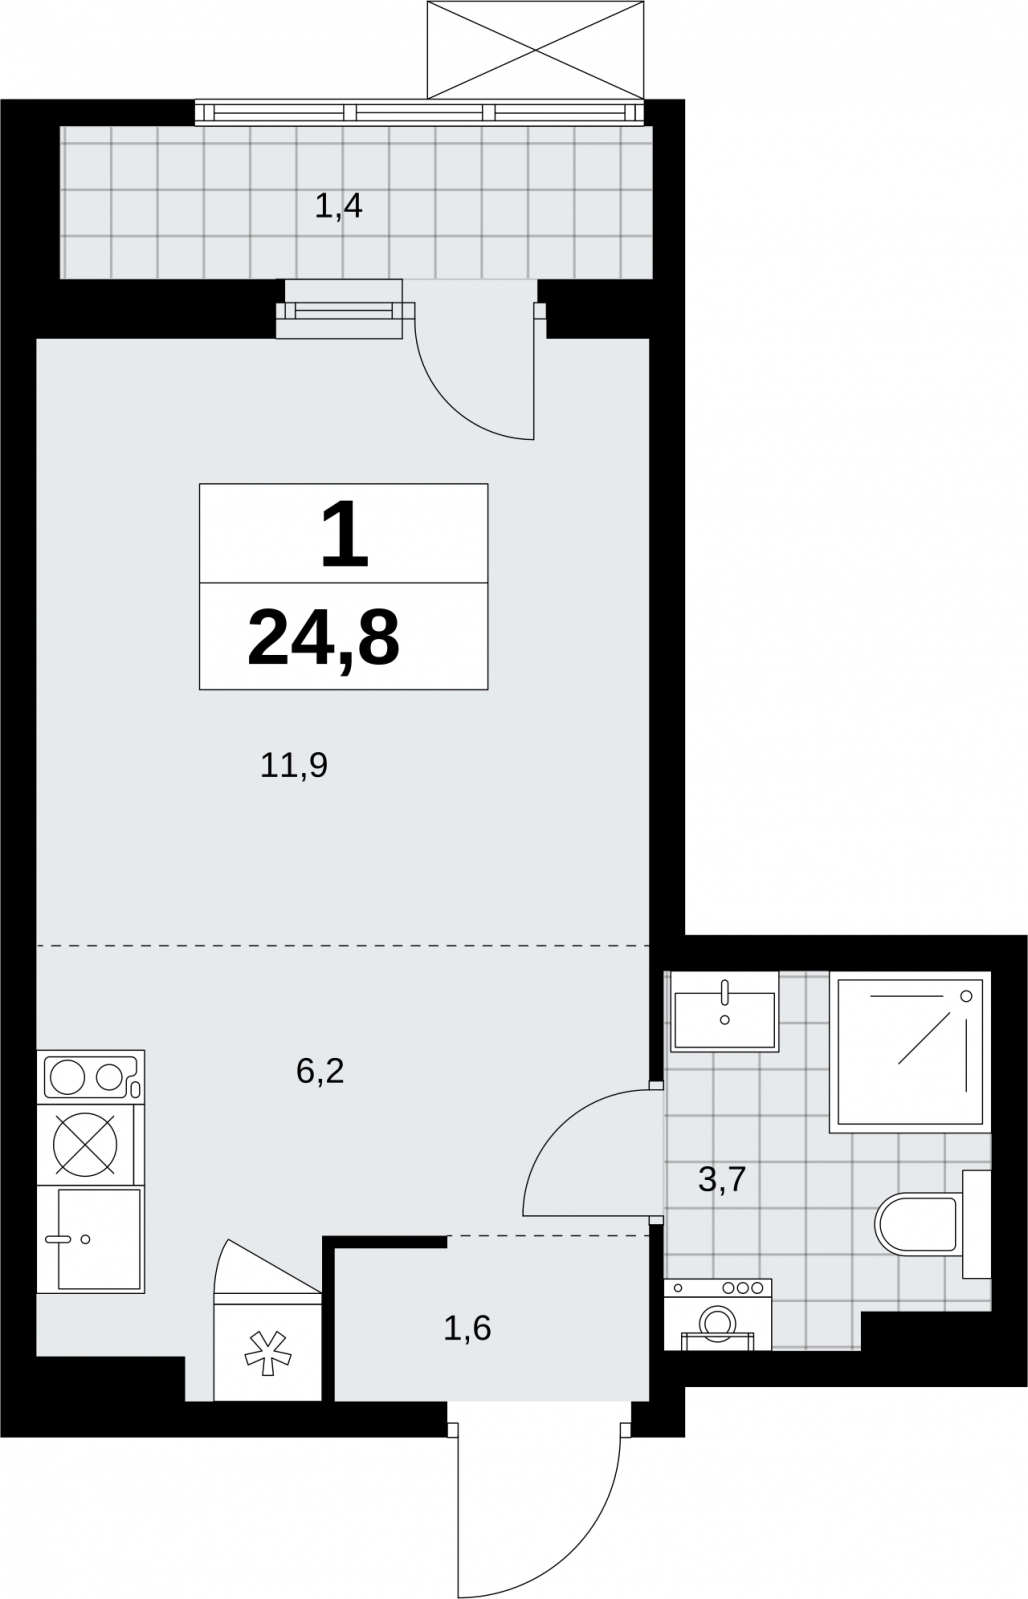 Продается однокомнатная квартира в новом жилом комплексе, недалеко от метро